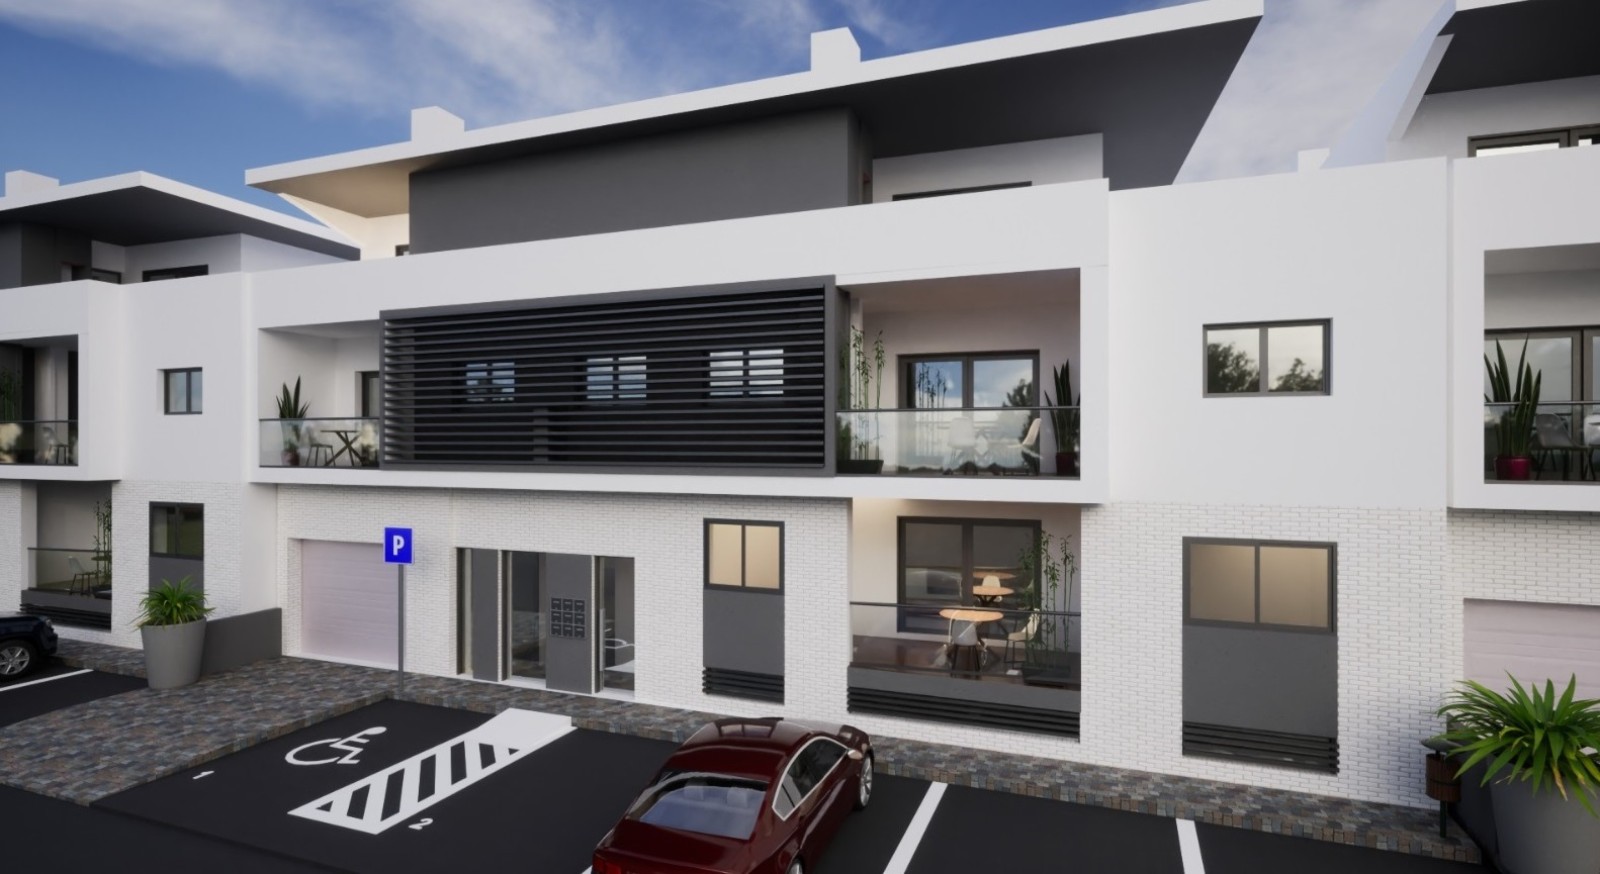 Piso en construcción de 0+1 dormitorio, en venta en Cabanas de Tavira, Algarve_238717